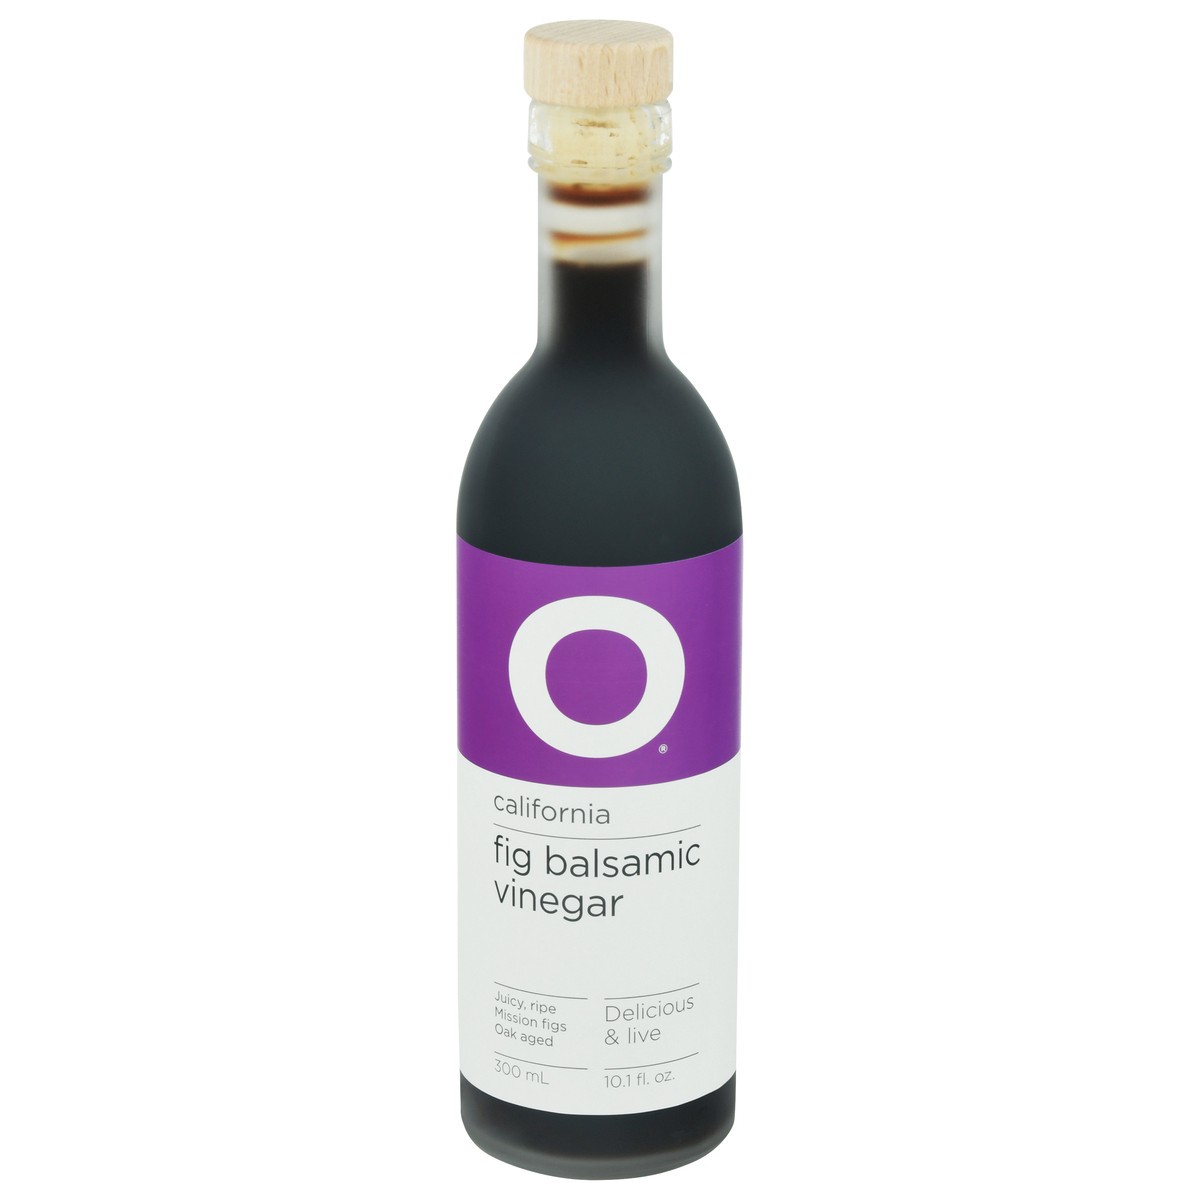 slide 1 of 14, O Vinegar Balsamic Fig Cali, 300 ml